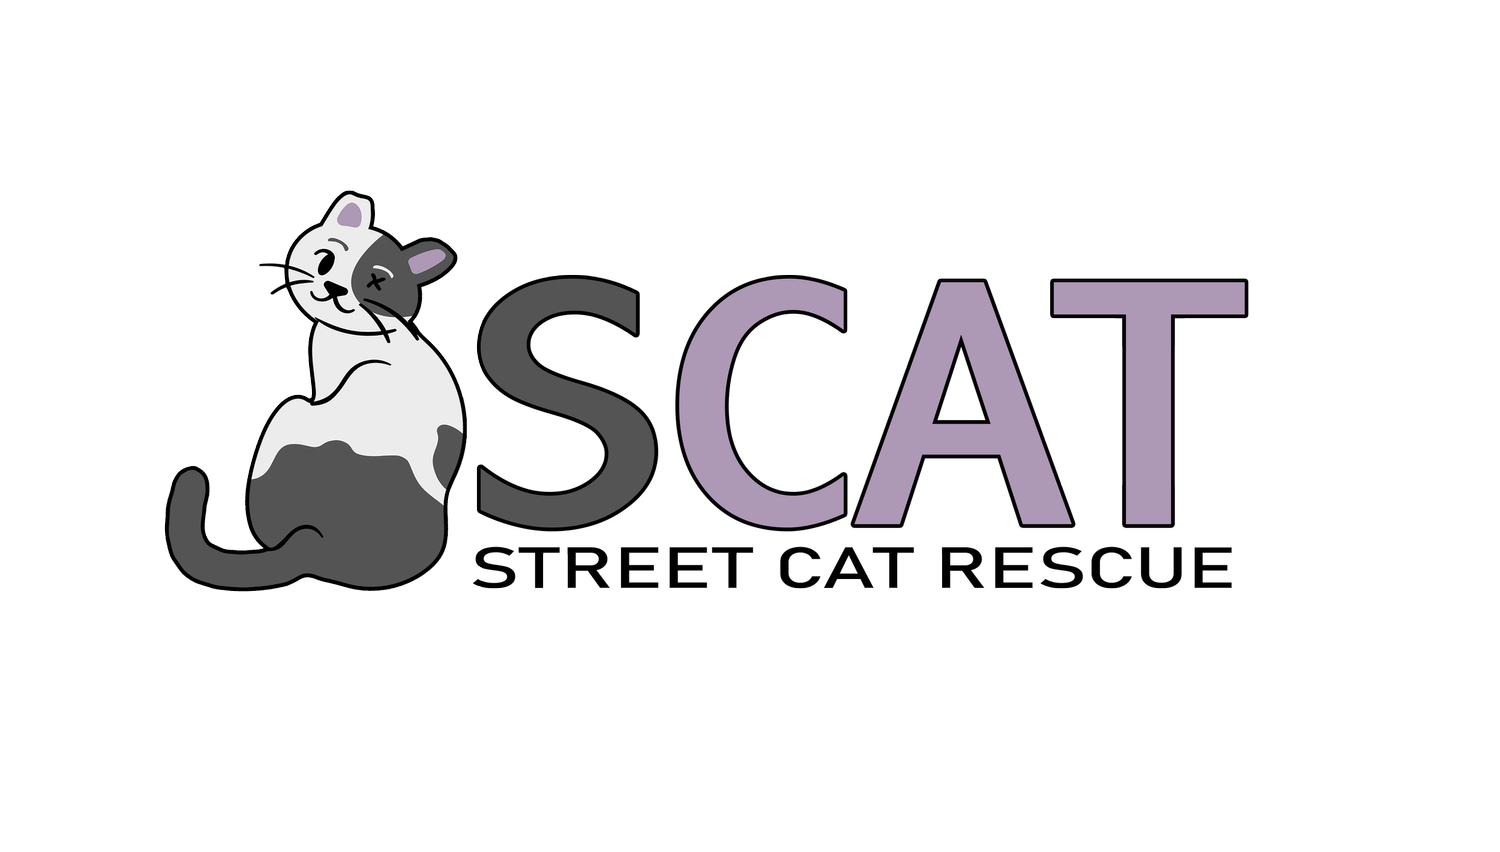 SCAT Street Cat Rescue